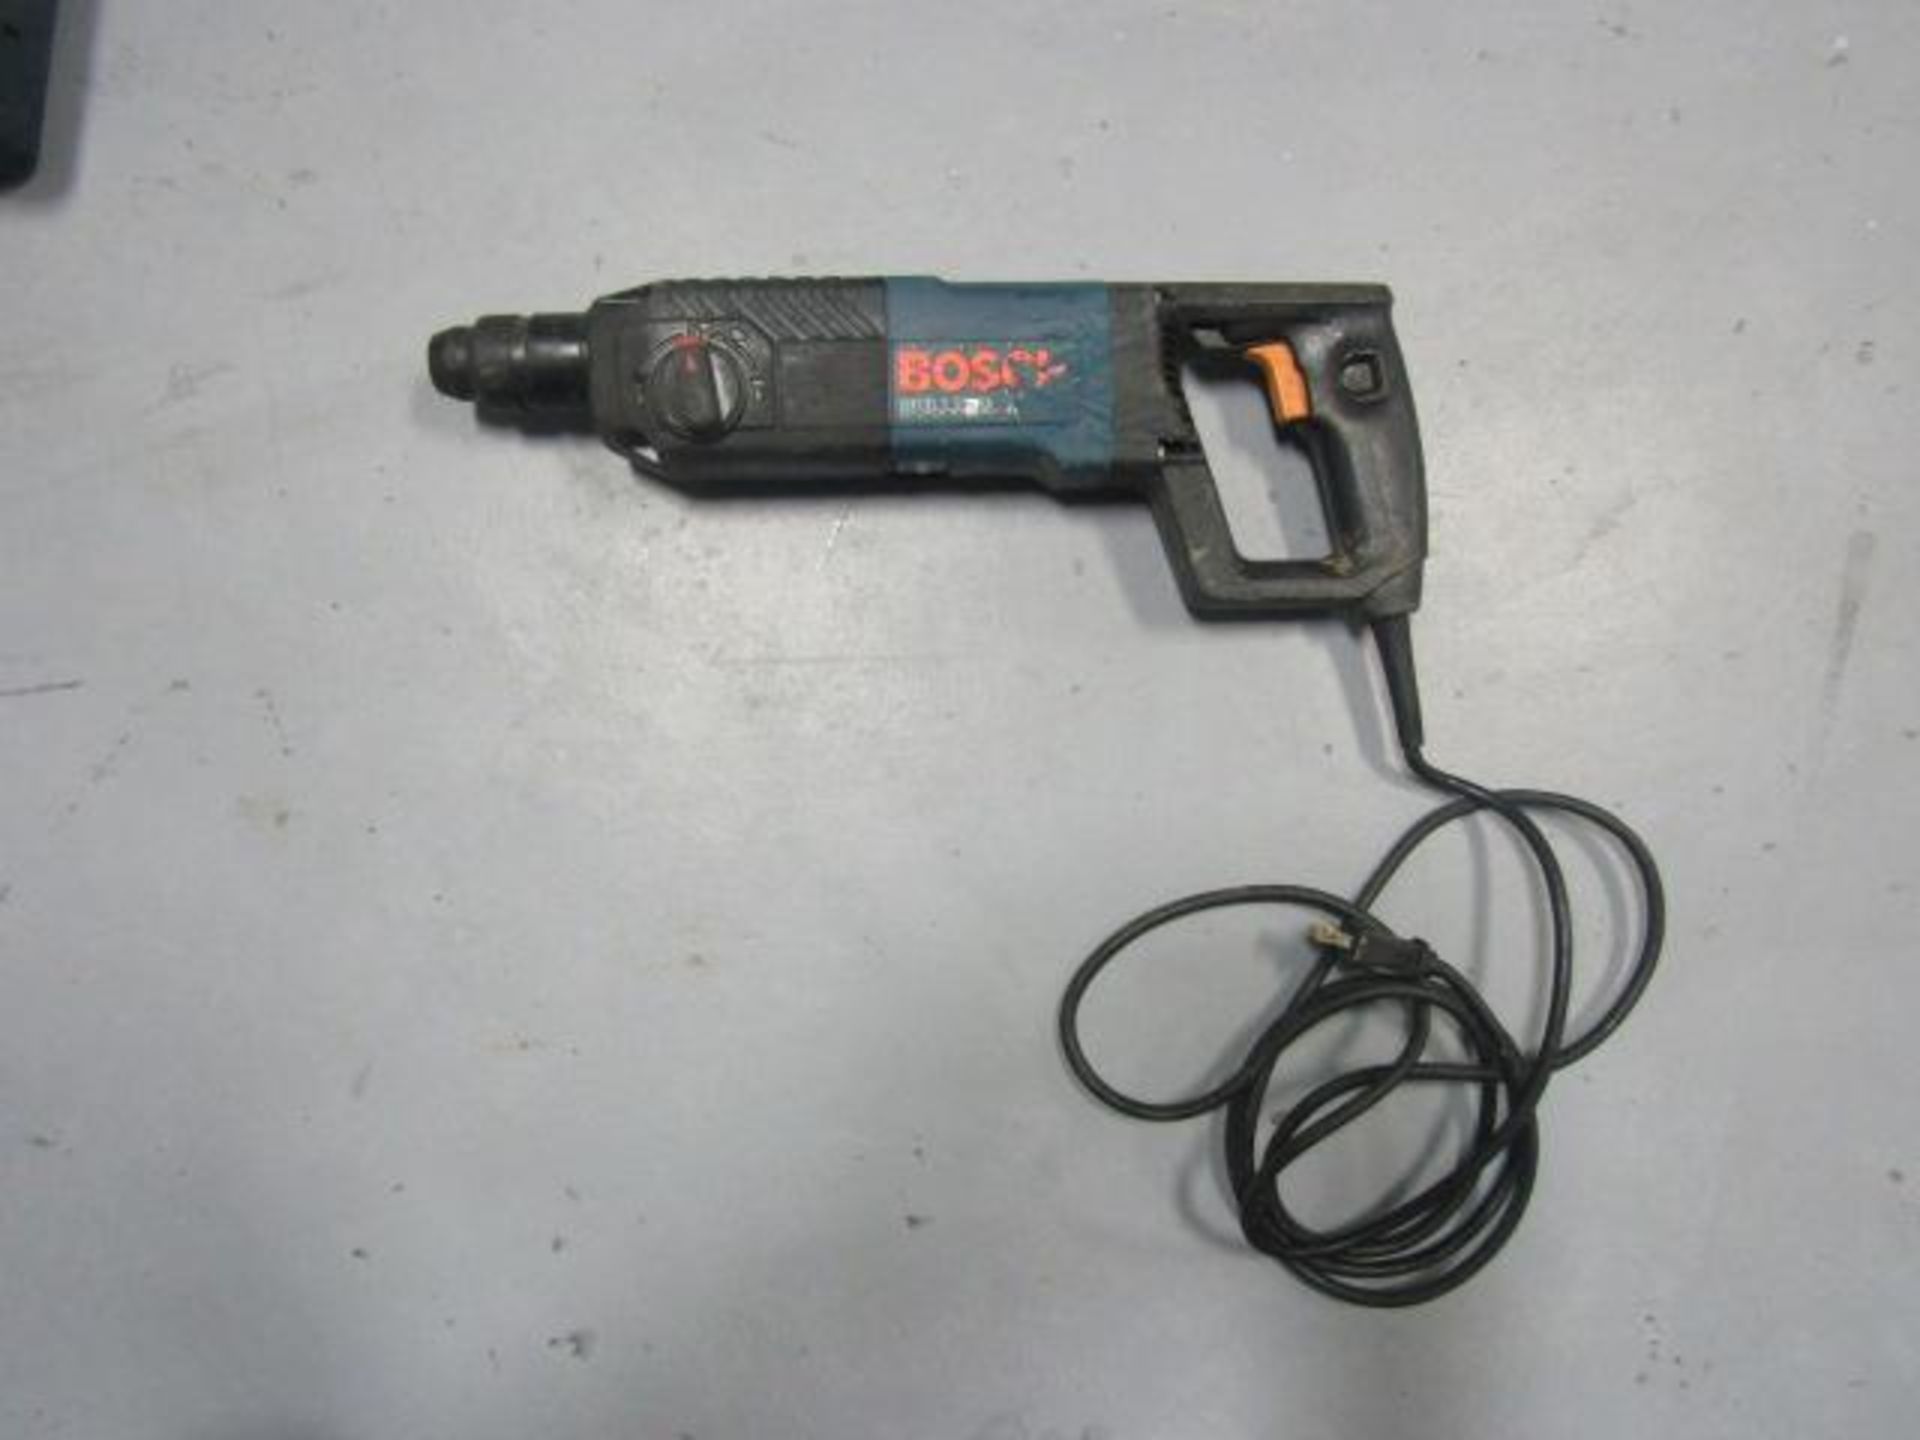 Bosch 11224VSR Hammer Drill - Image 2 of 4